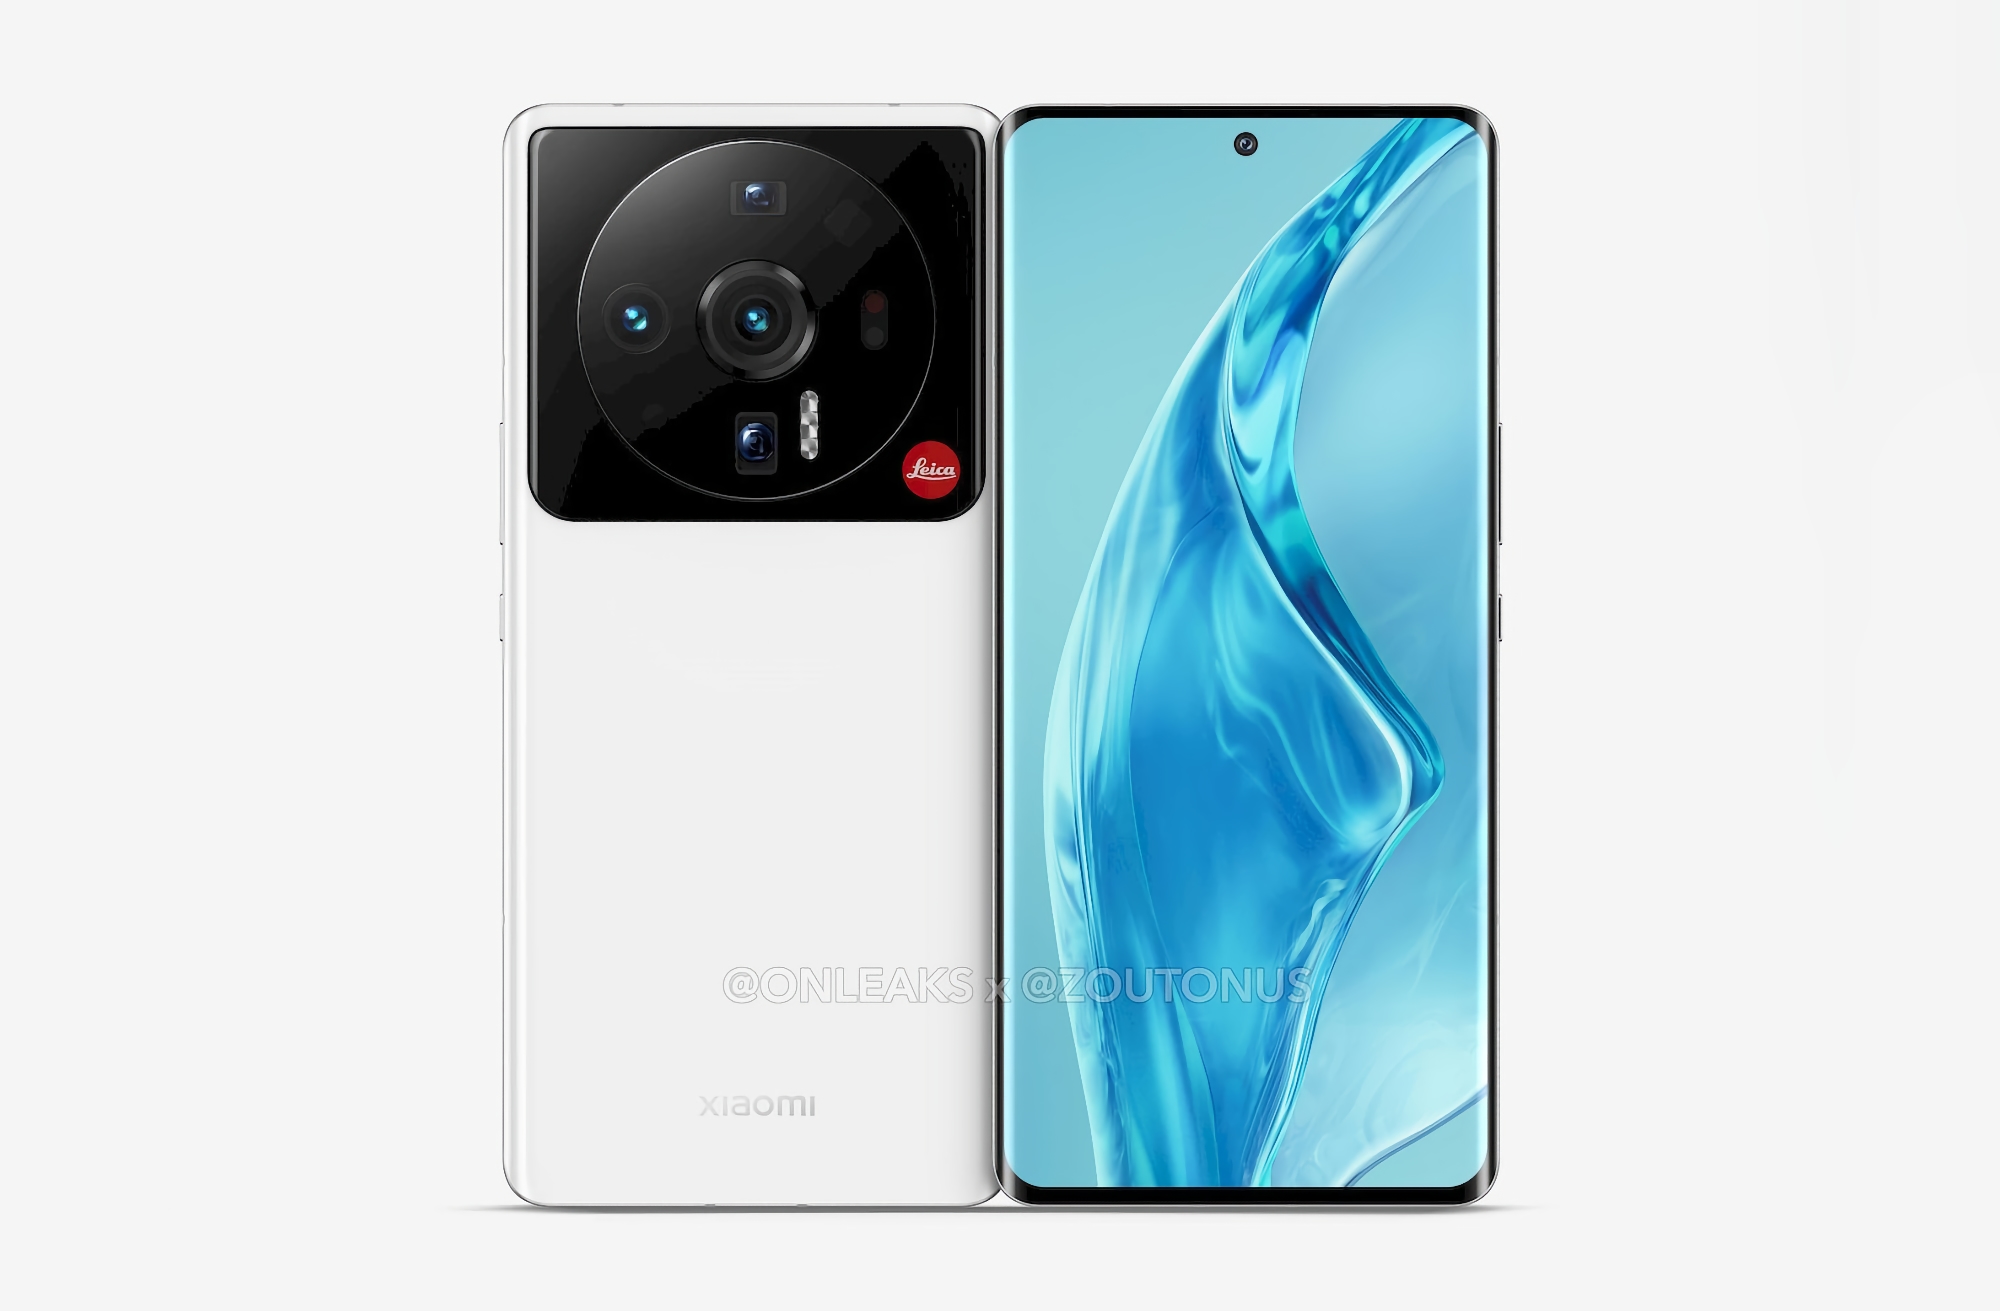 Offiziell: Die Smartphone-Serie Xiaomi 12S mit Leica-Kamera und Snapdragon 8+ Gen 1-Chip wird am 4. Juli vorgestellt